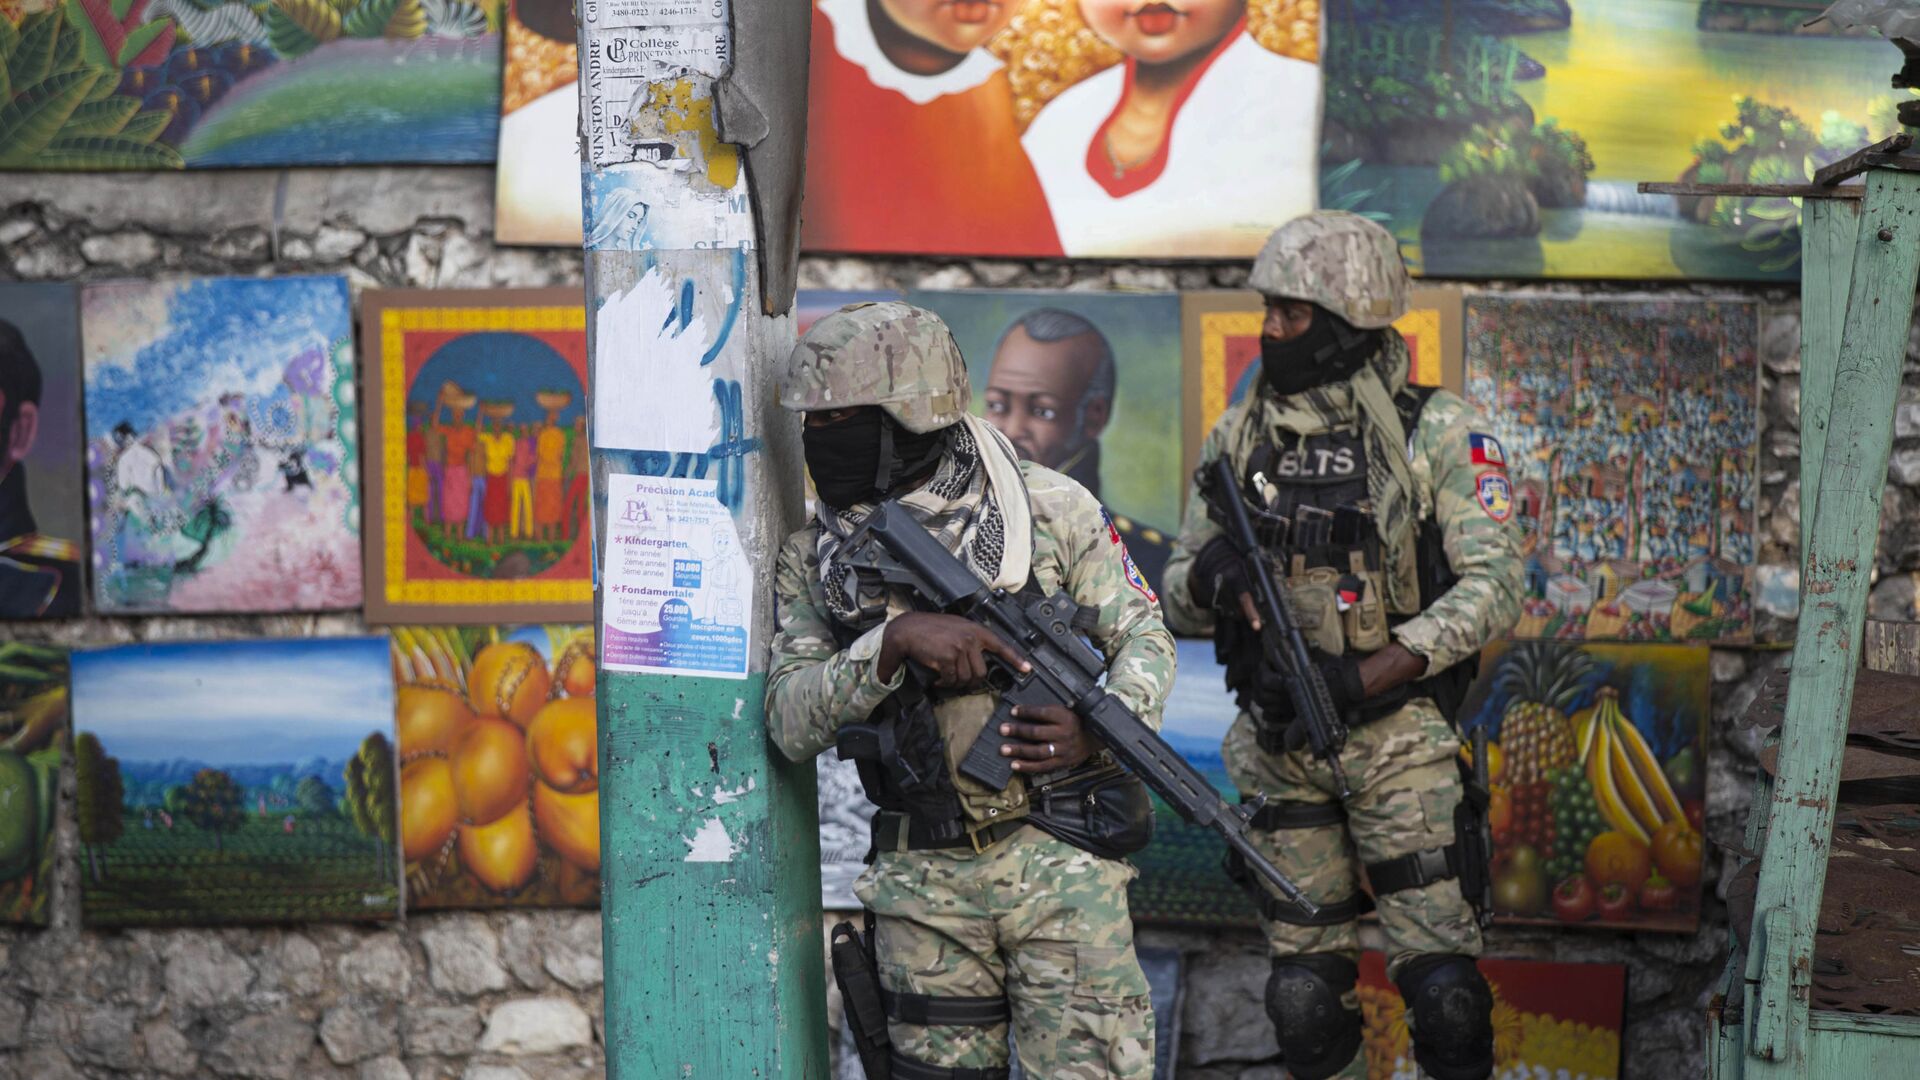 Солдаты патрулируют Петион Вилль, район, где жил покойный президент Гаити Жовенель Мойз, в Порт-о-Пренсе, Гаити - Sputnik Ўзбекистон, 1920, 11.07.2021